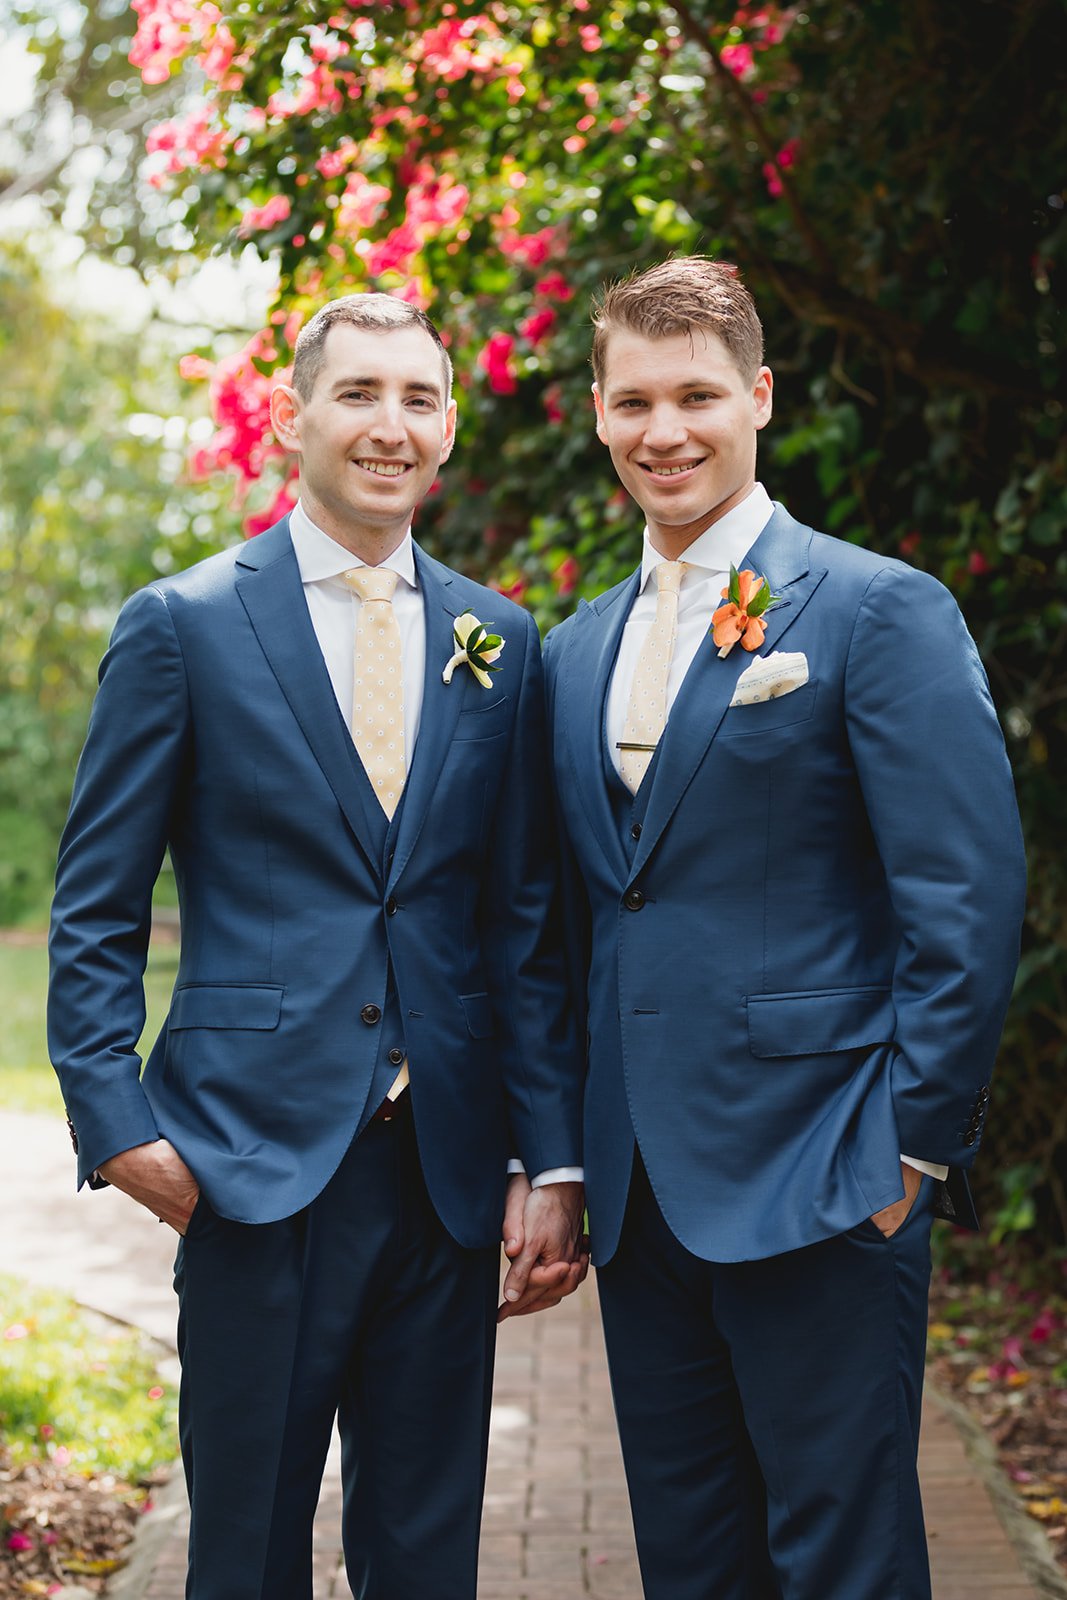 Wedding at Fairchild Tropical Botanic Garden | Ben + Paul | Cortiella ...